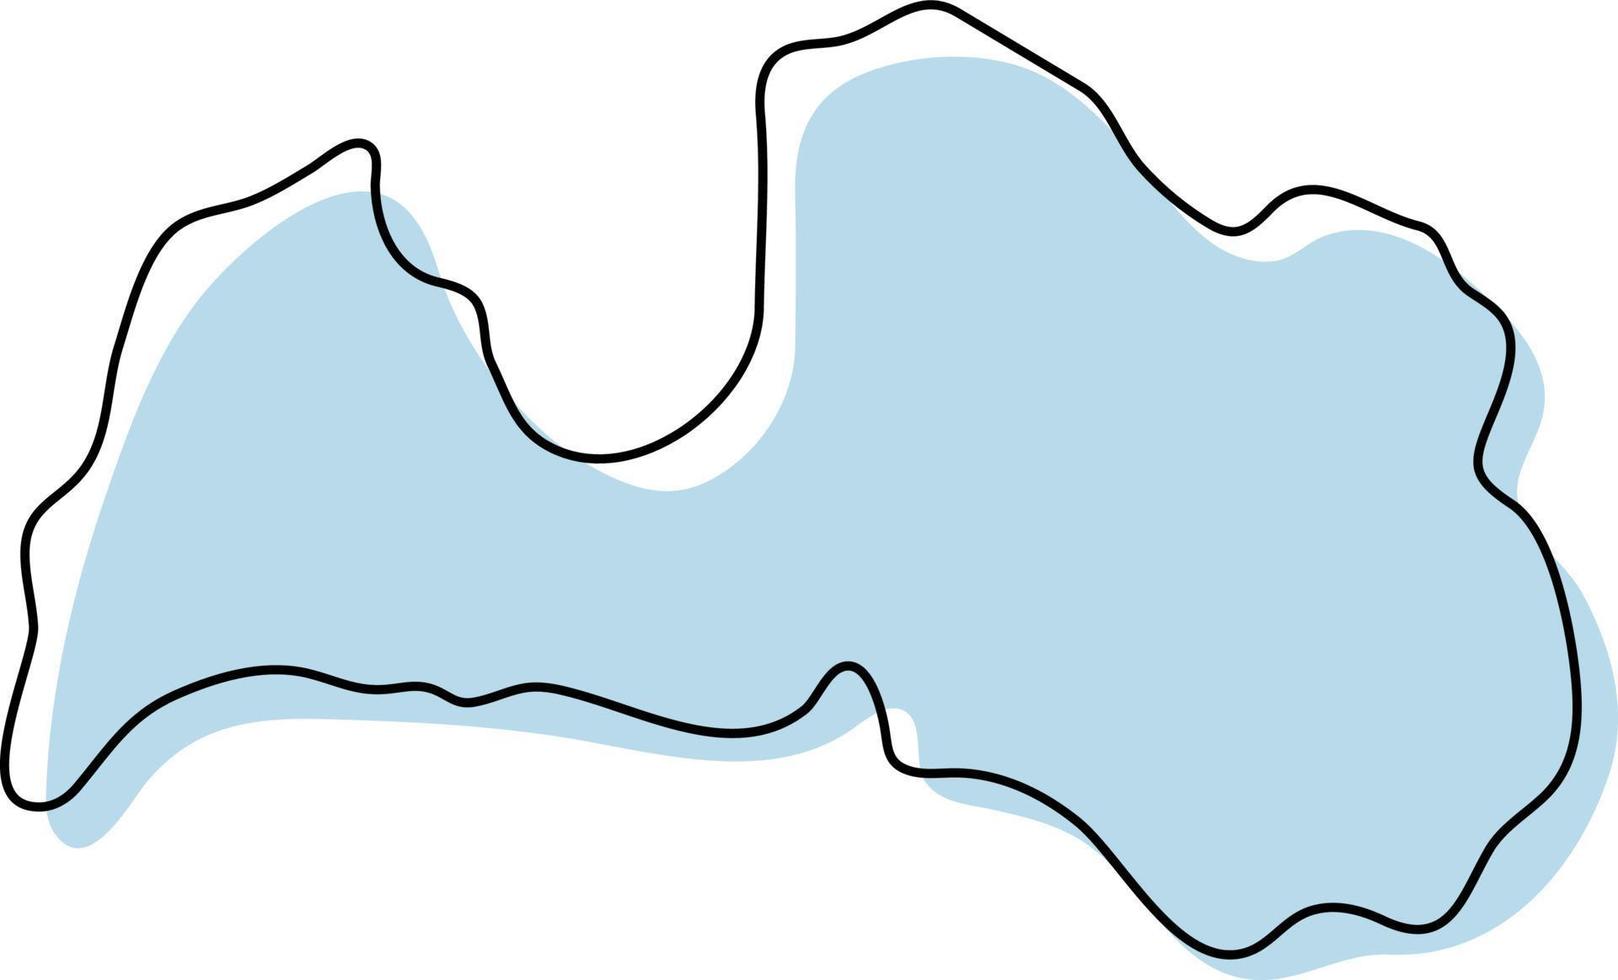 gestileerde eenvoudige overzichtskaart van het pictogram van Letland. blauwe schetskaart van letland vectorillustratie vector